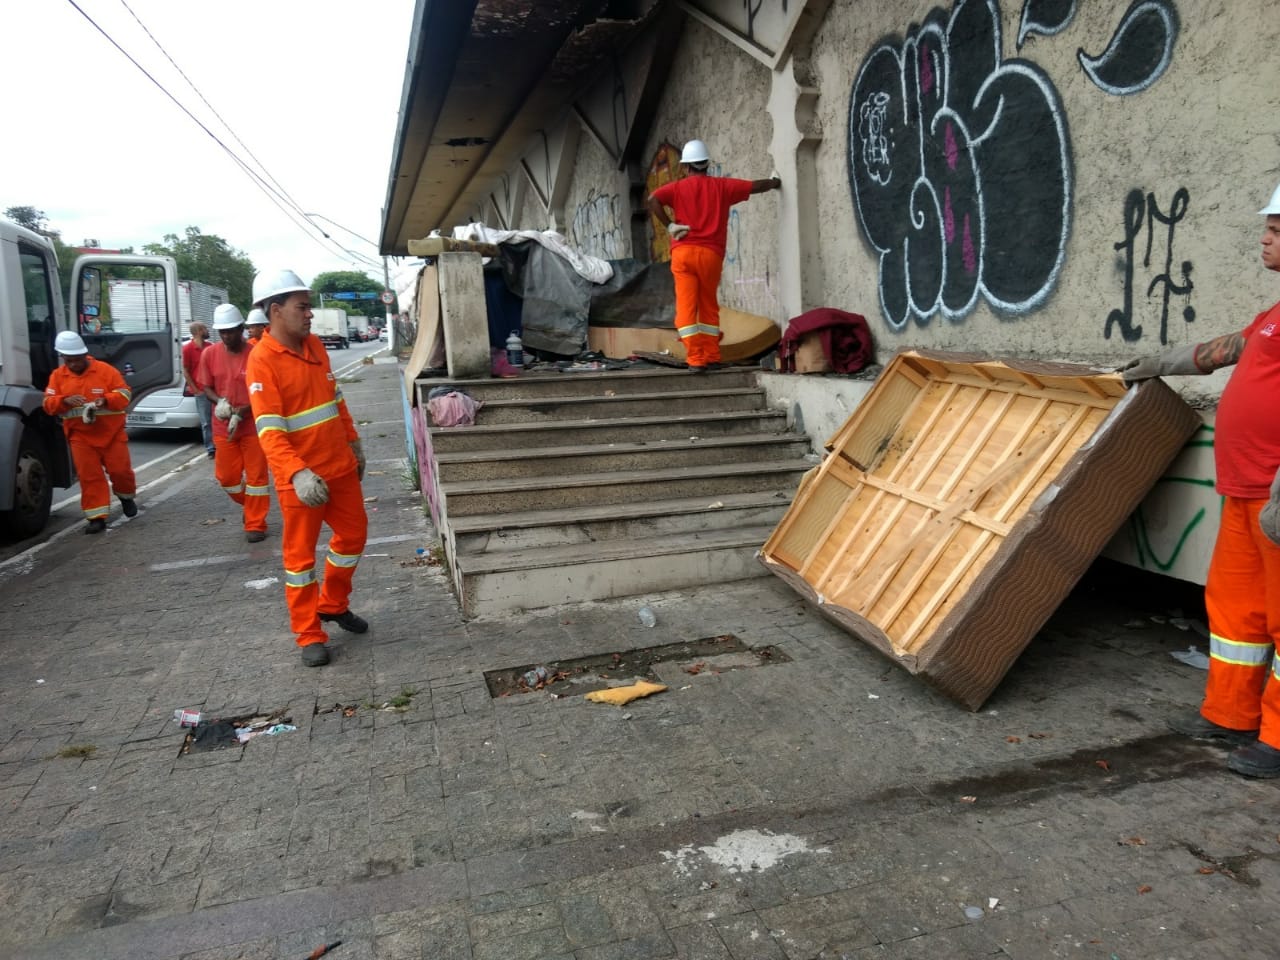 Foto: Cinco funcionário da Subprefeitura Ipiranga, vestidos com uniformas na cor laranja e capacetes brancos, todos estão recolhendo entulhos como colchões, papelão, restos de madeiras